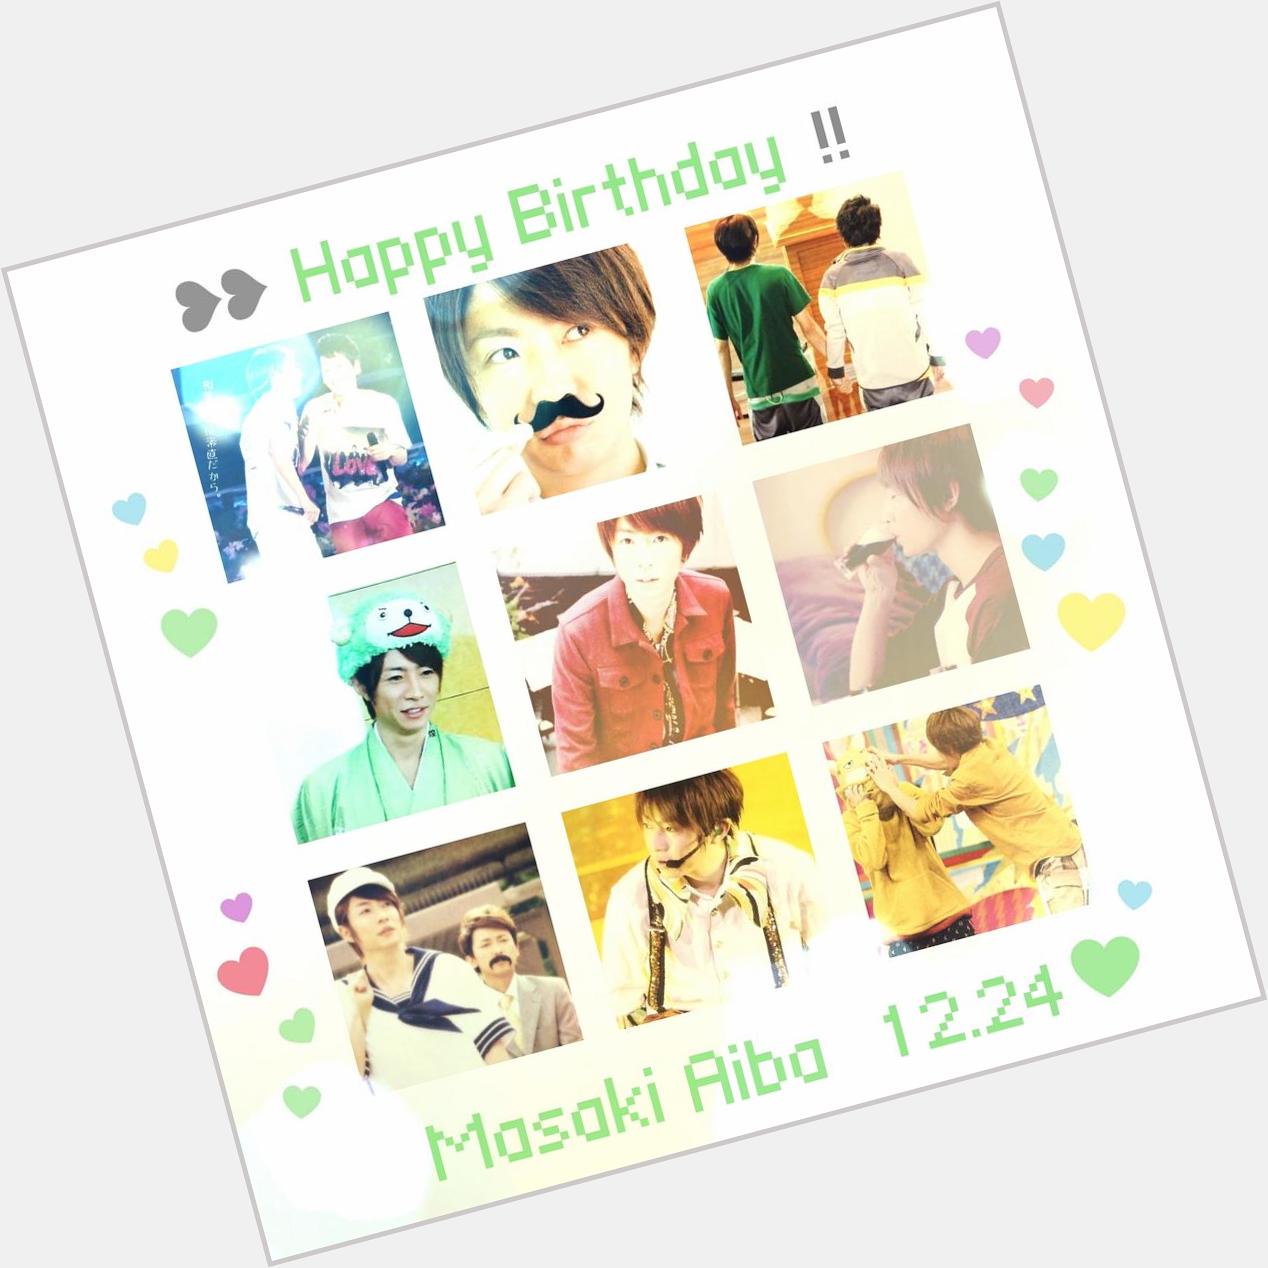   Masaki Aiba Happy Birthday                             ..!                    \\(  )/           